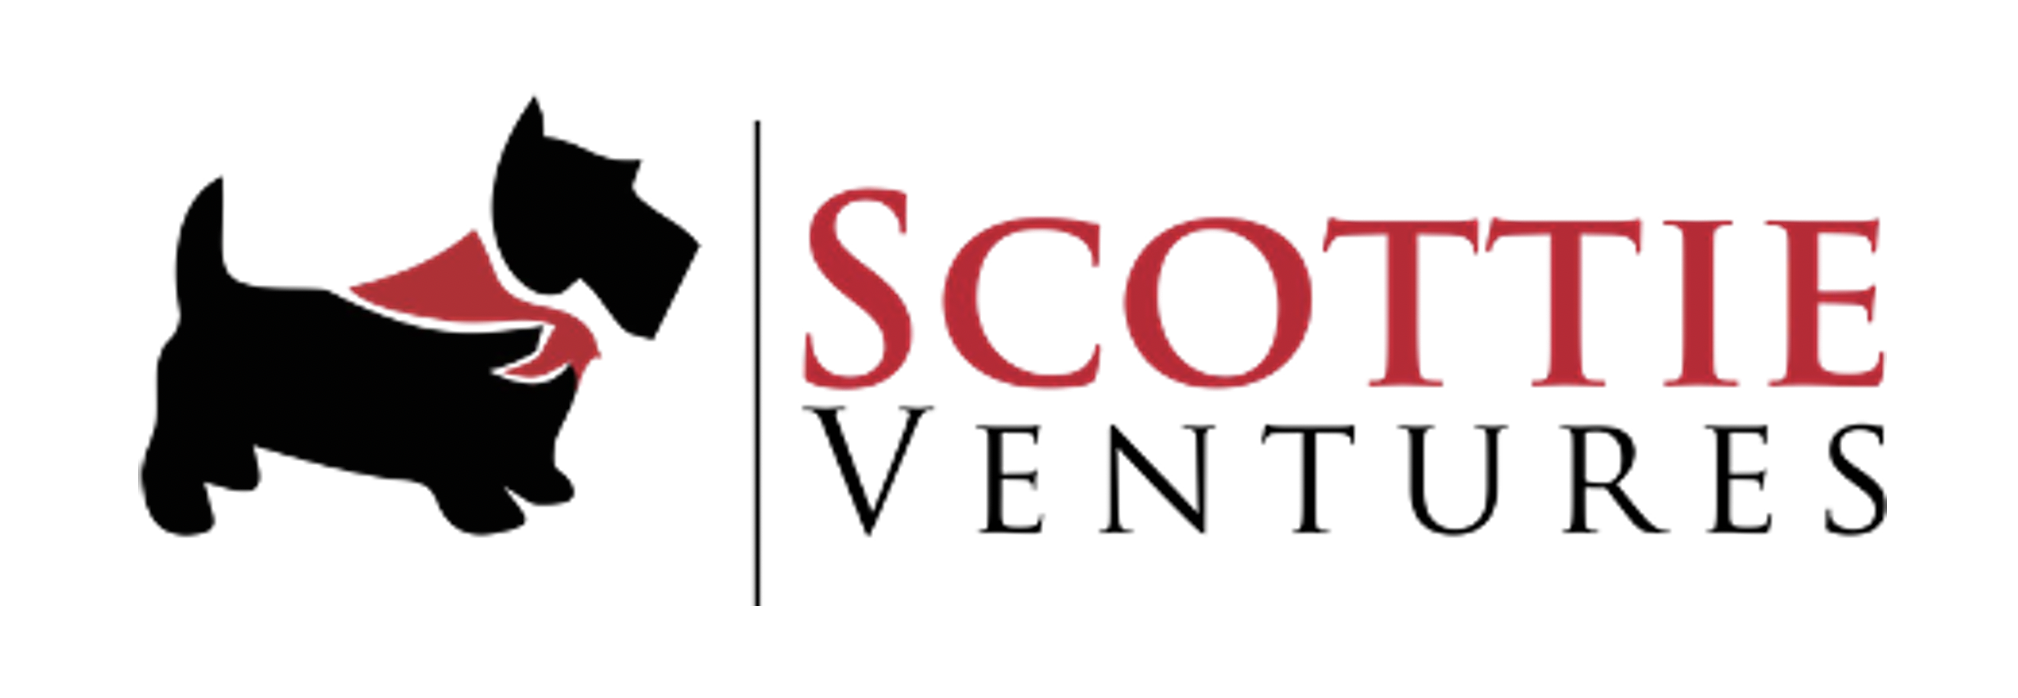 Scottie Ventures